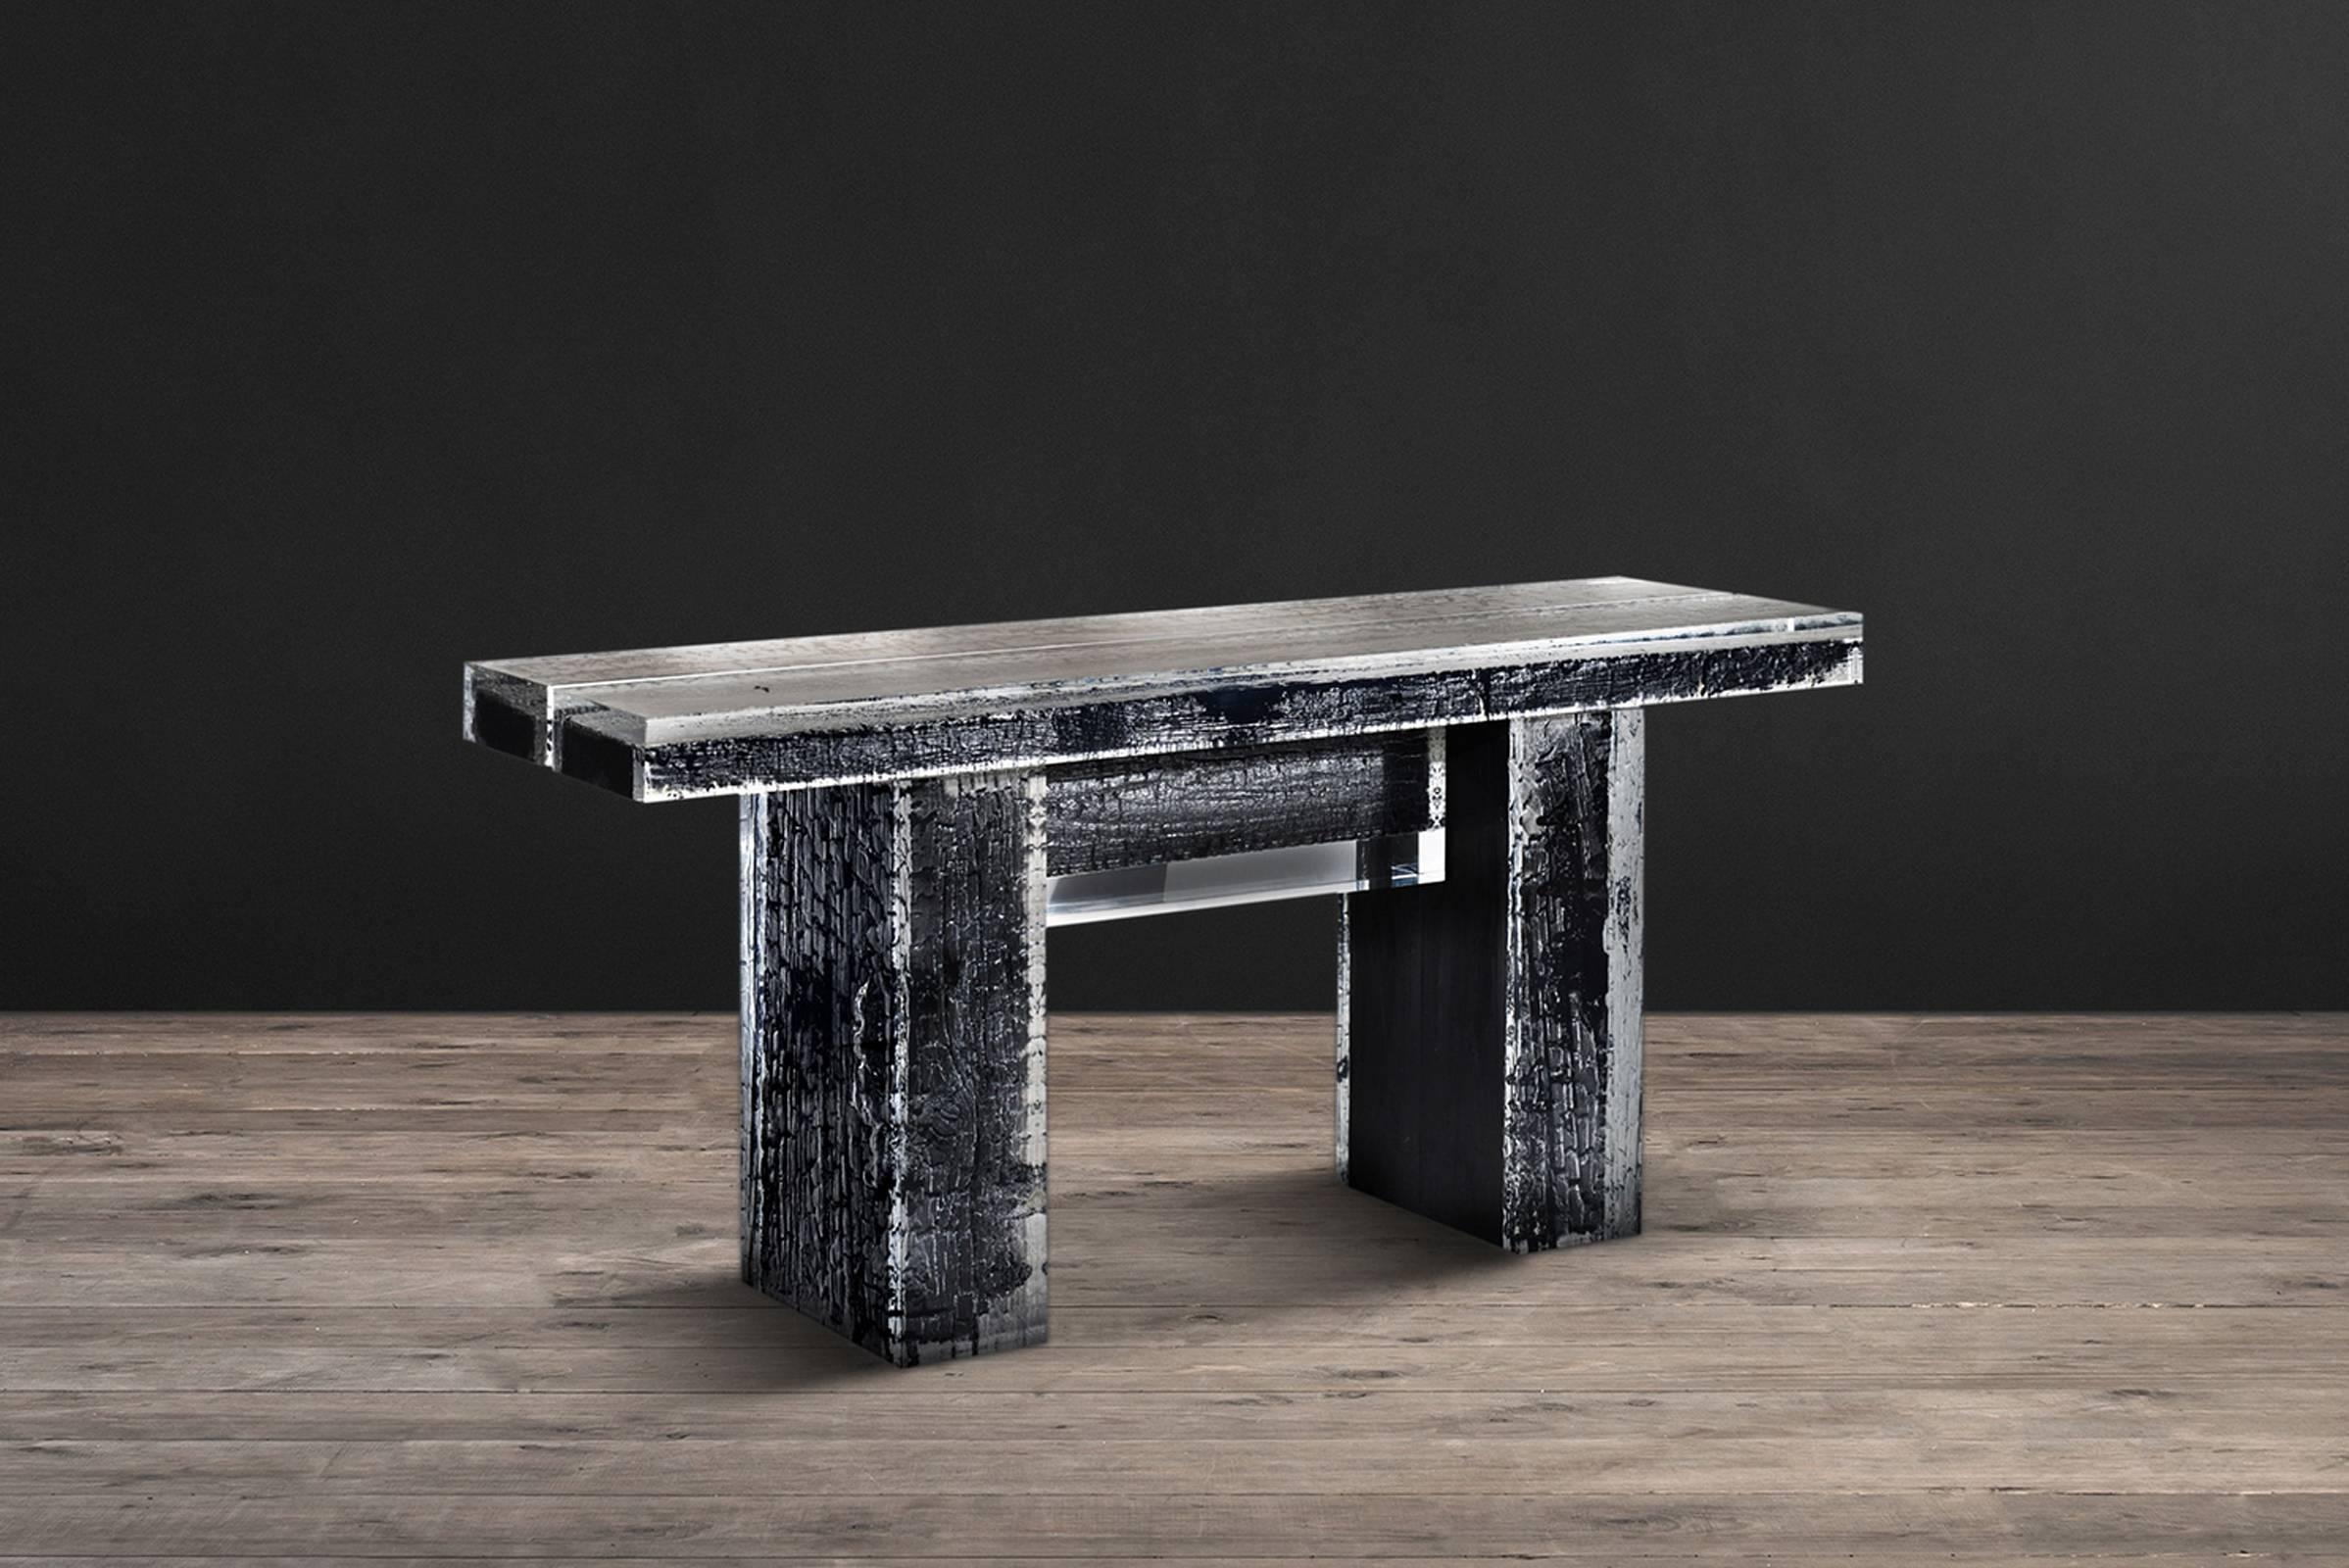 Table console Ice Burnt avec bois brûlé en cristallin 
acrylique. L'aspect lisse et glacé contraste avec 
Bois brut carbonisé. La table comporte quatre poutres 
de bois enveloppé dans de l'acrylique, placé au sommet de deux grandes 
bois